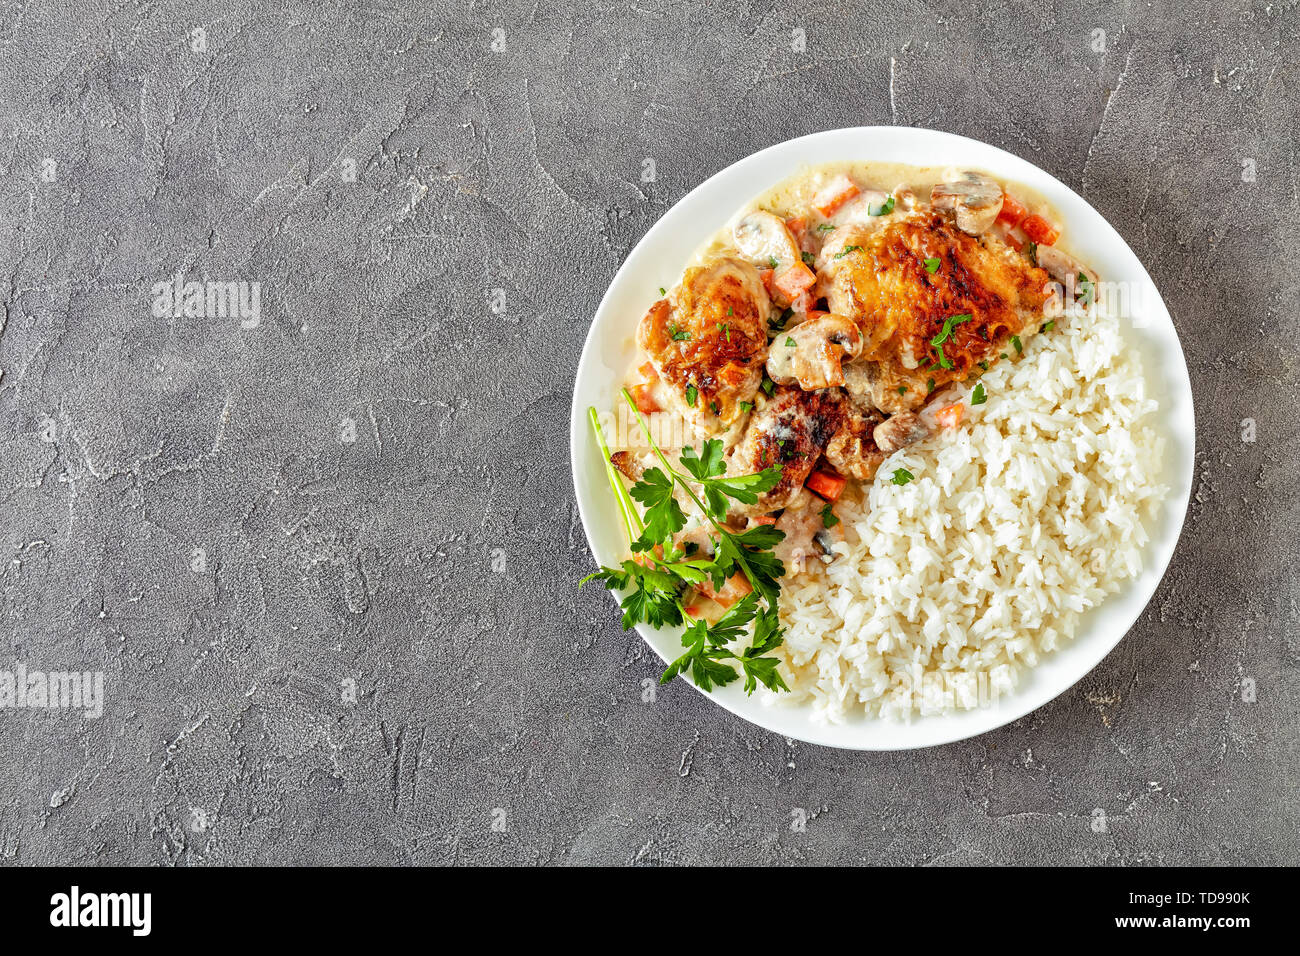 Compotée de poulet avec sauce au vin blanc crème, champignons et légumes et servi avec du riz sur une plaque sur une table en béton - Fricassée de poulet, de classe Banque D'Images